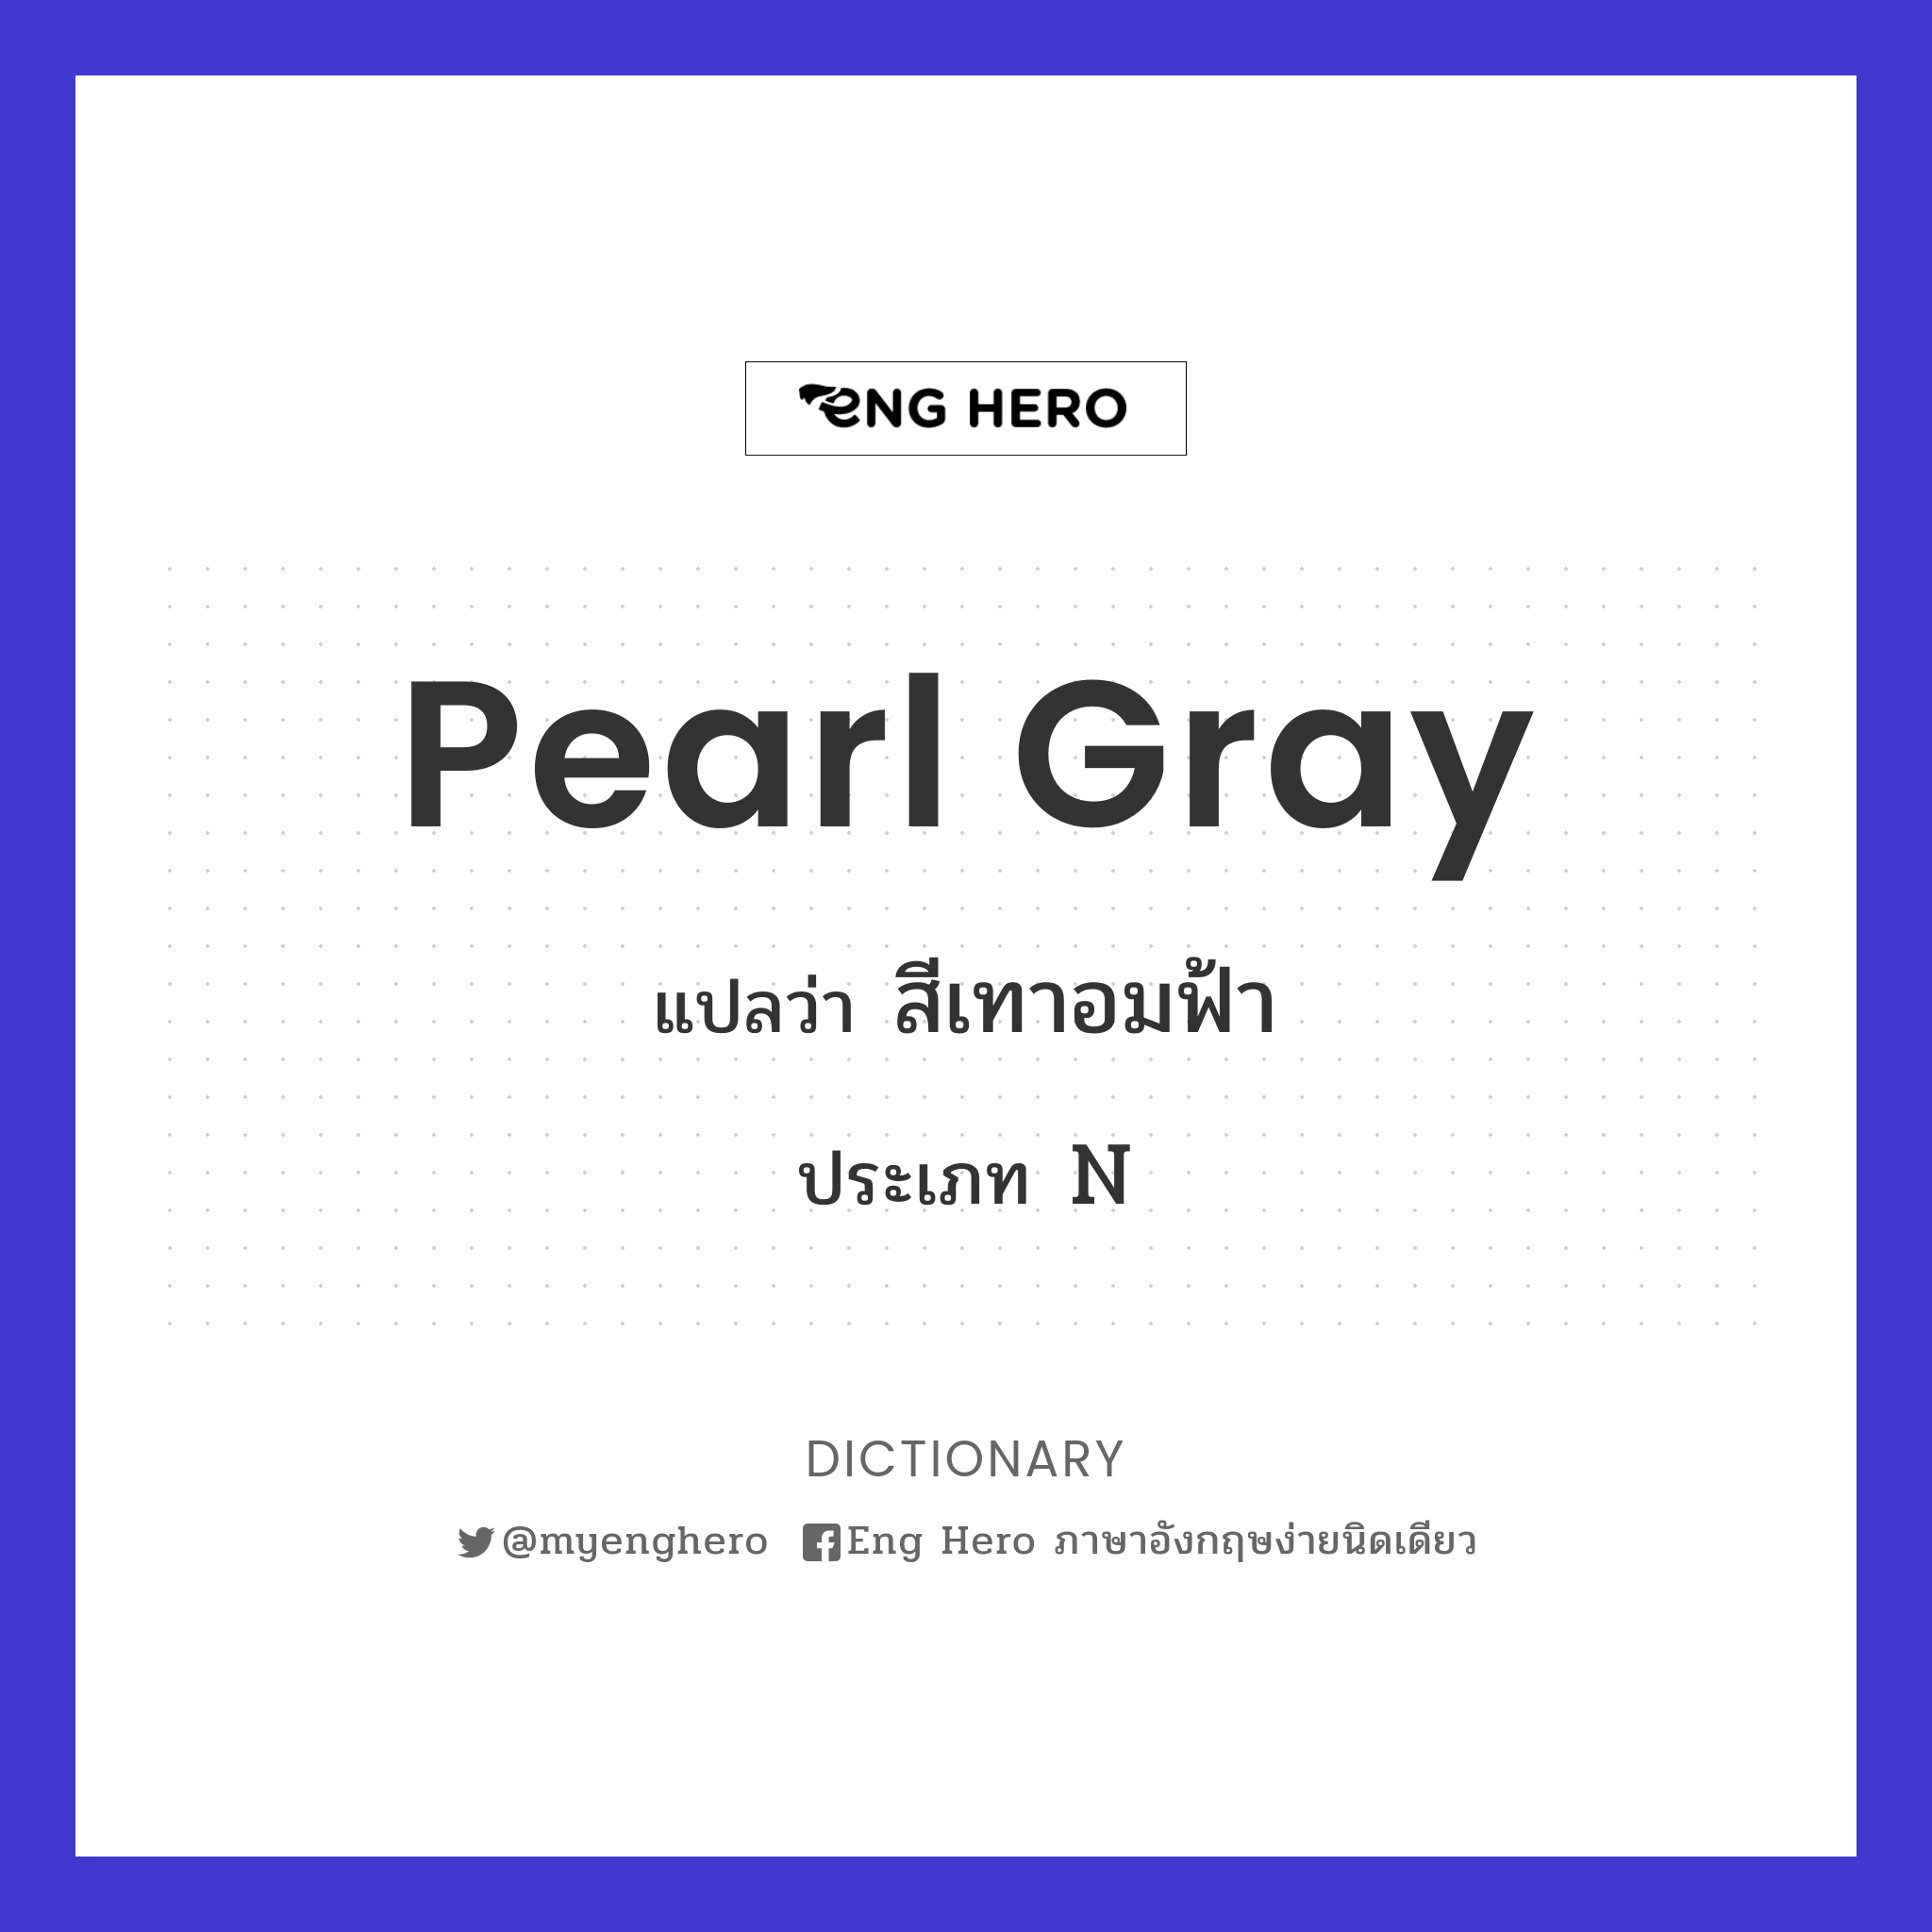 Pearl Gray แปลว่า สีเทาอมฟ้า | Eng Hero เรียนภาษาอังกฤษ ออนไลน์ ฟรี